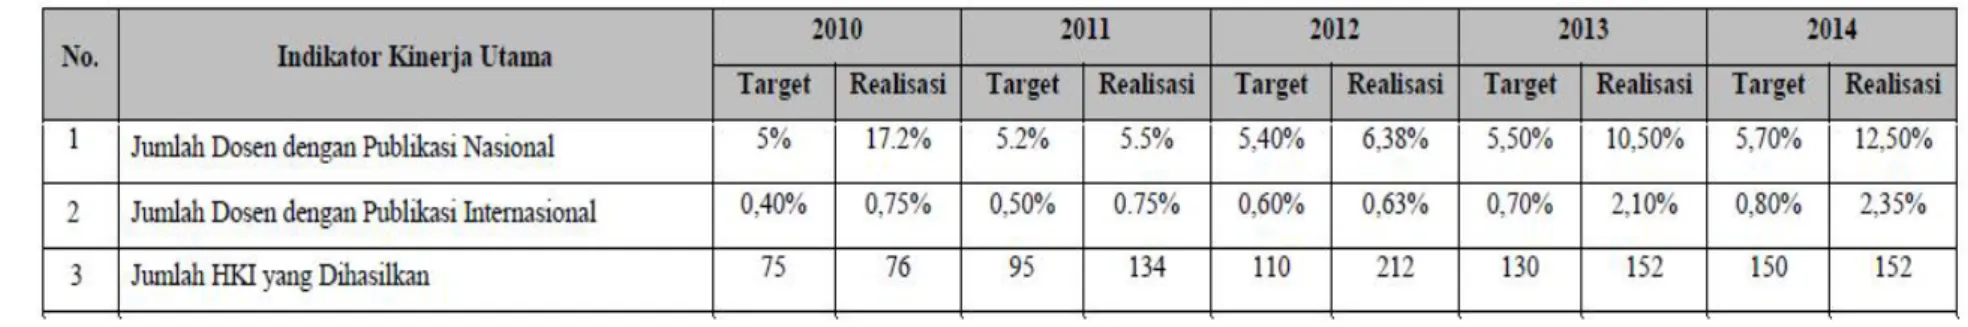 Tabel 1.3 Capaian Indikator Kinerja Utama Ditjen Pendidikan Tinggi  2010-2014